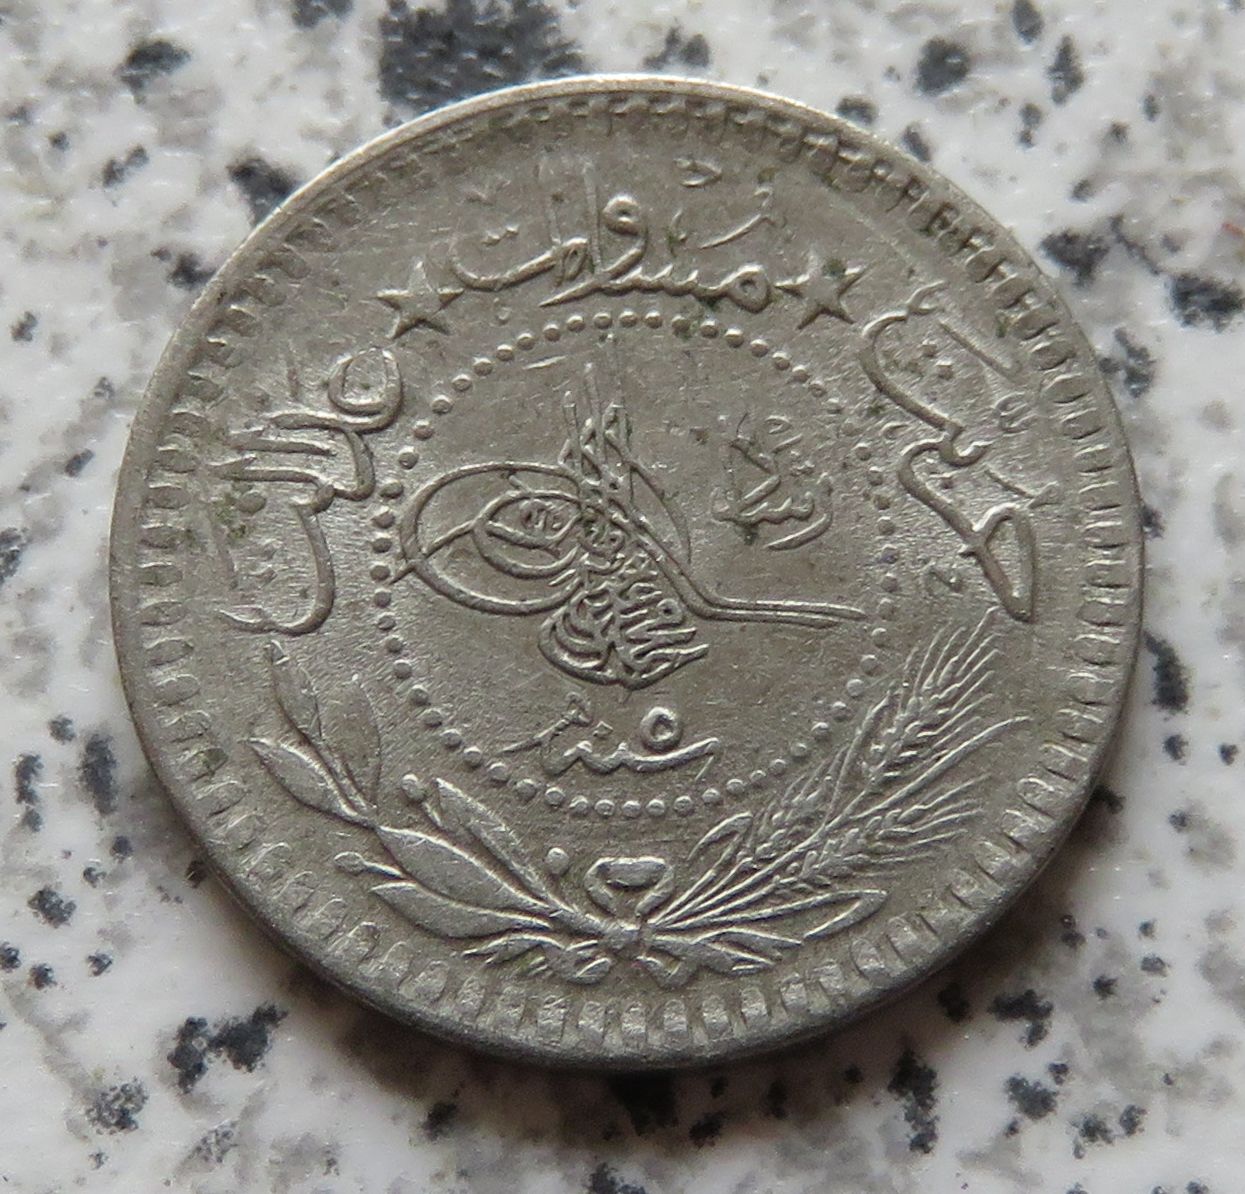  Türkei 5 Para 1327/5 (1913)   